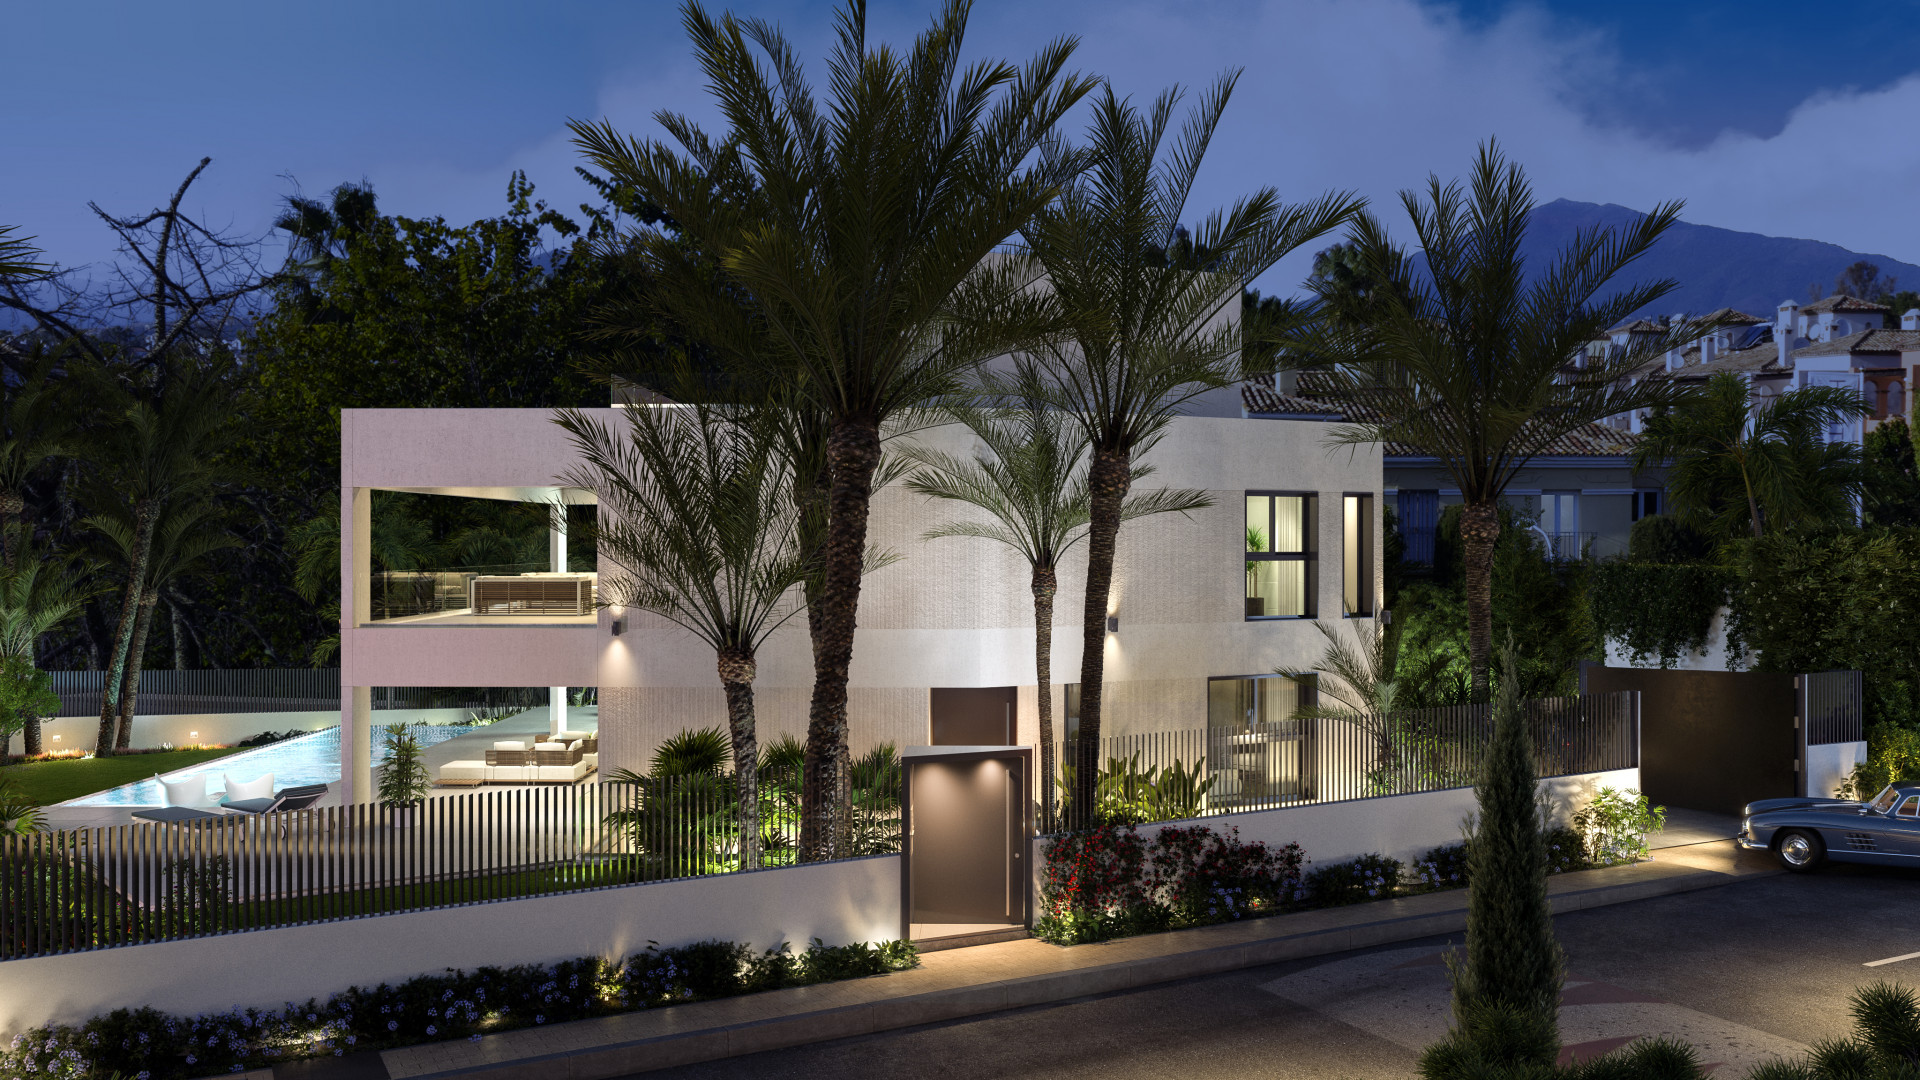 Villa Limon, villa de nueva construcción ubicada en la prestigiosa urbanización de Guadalmina Baja.